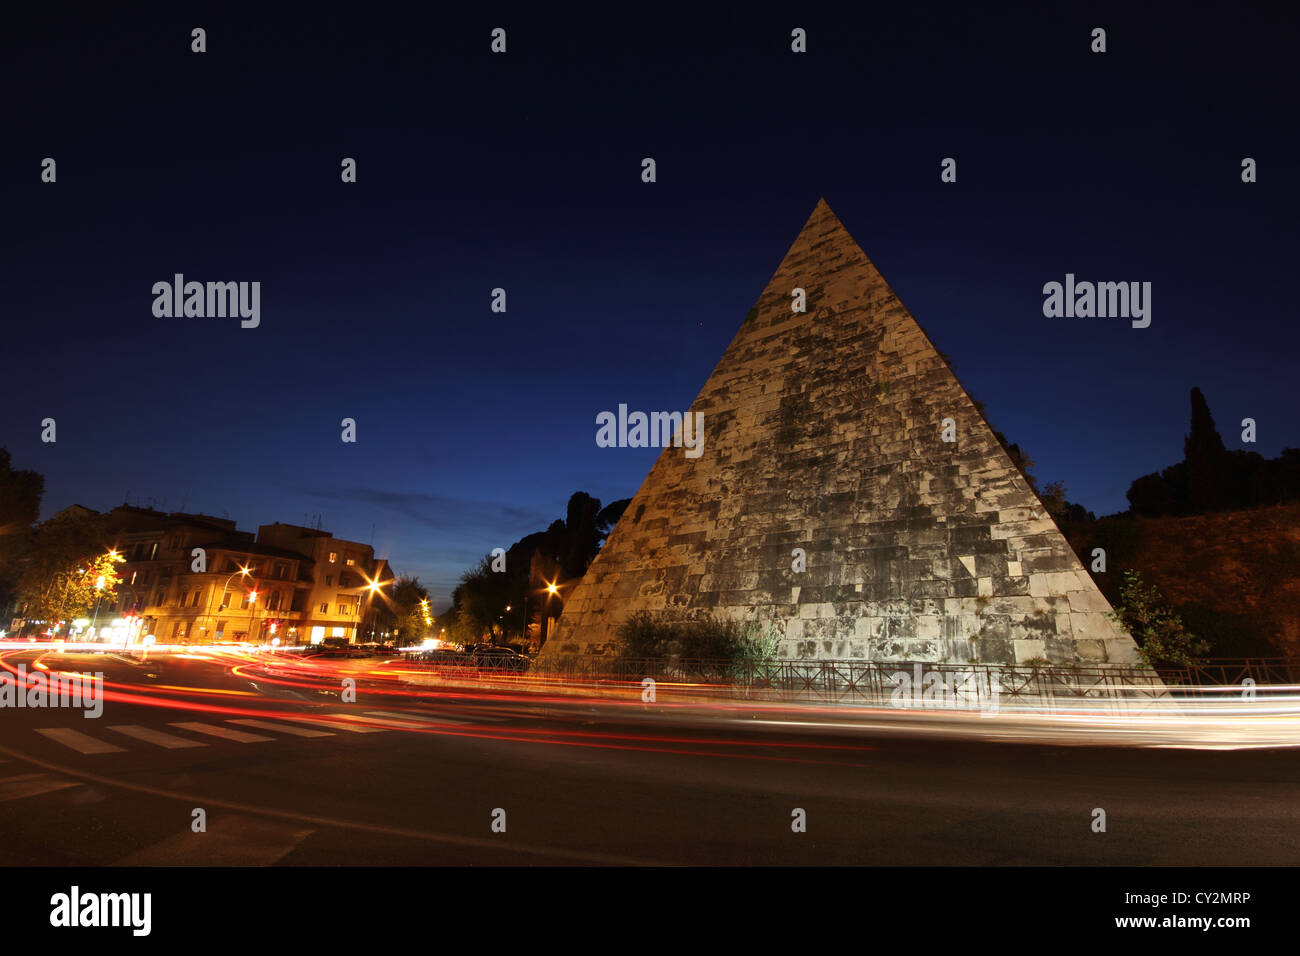 La spettacolare monumento a Piramide di Caio Cestio Roma al tramonto, piramide, piramide, Italia, viaggi photoarkive Foto Stock